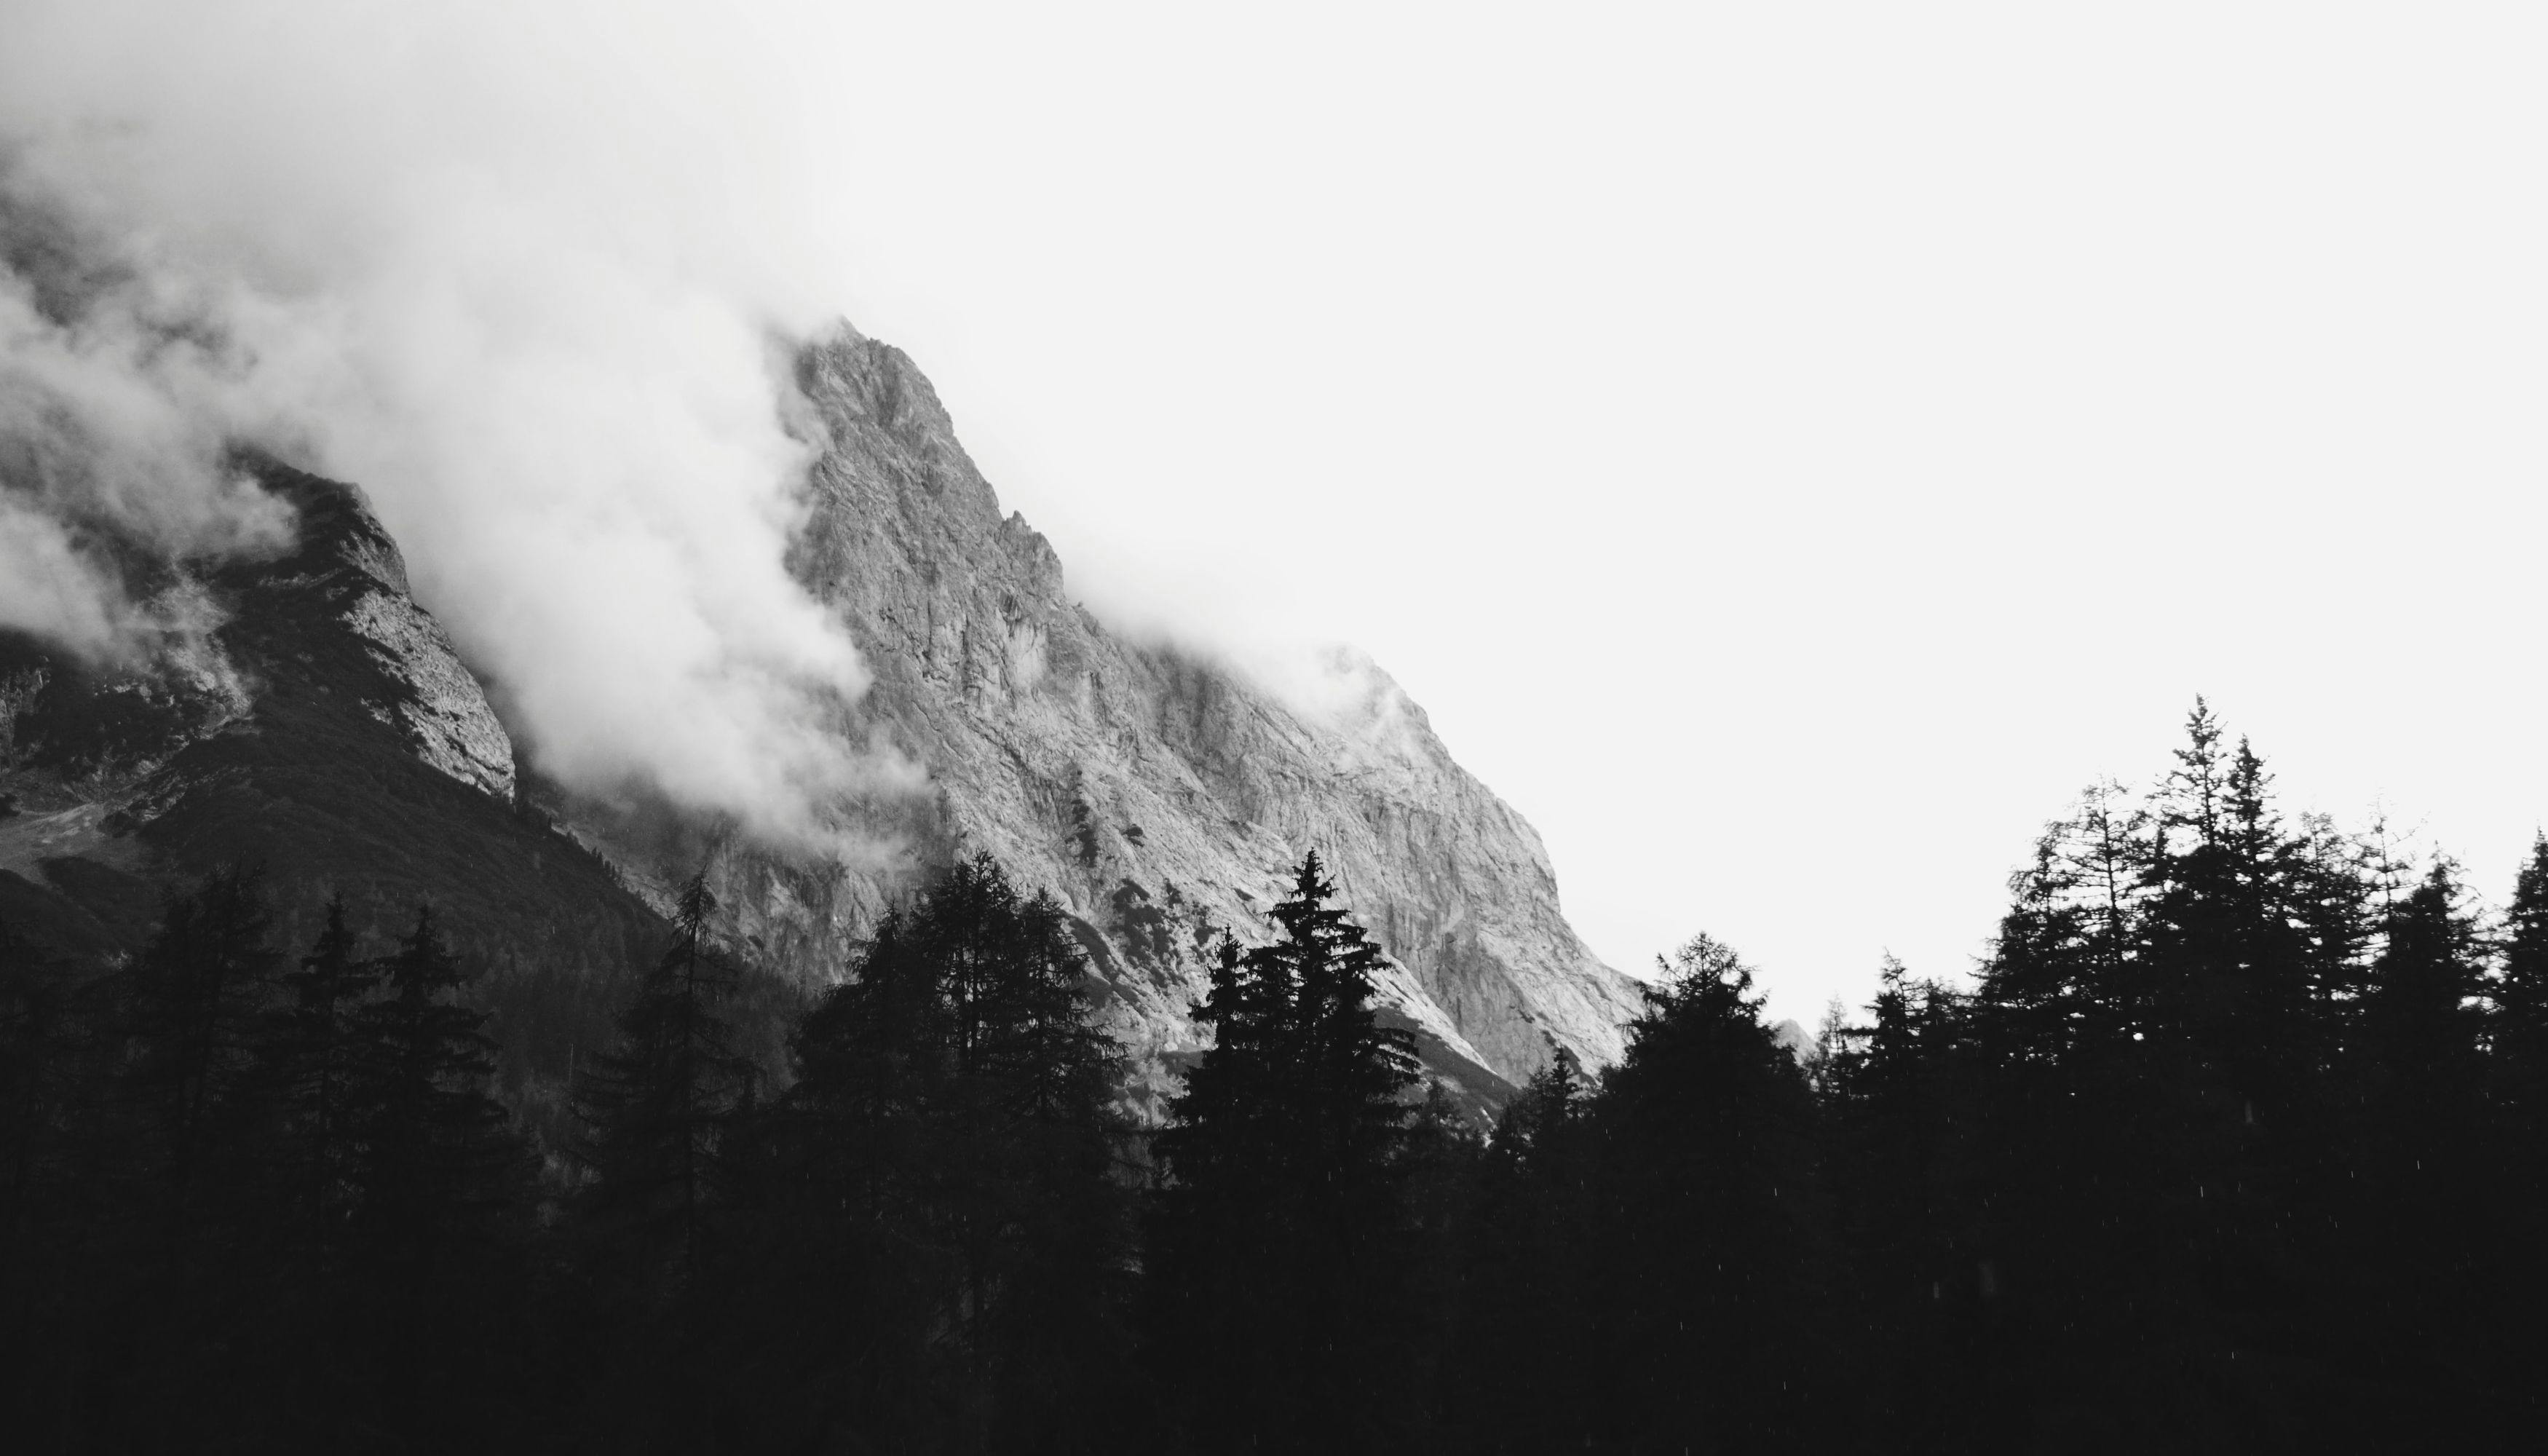 A mountain peeking through clouds